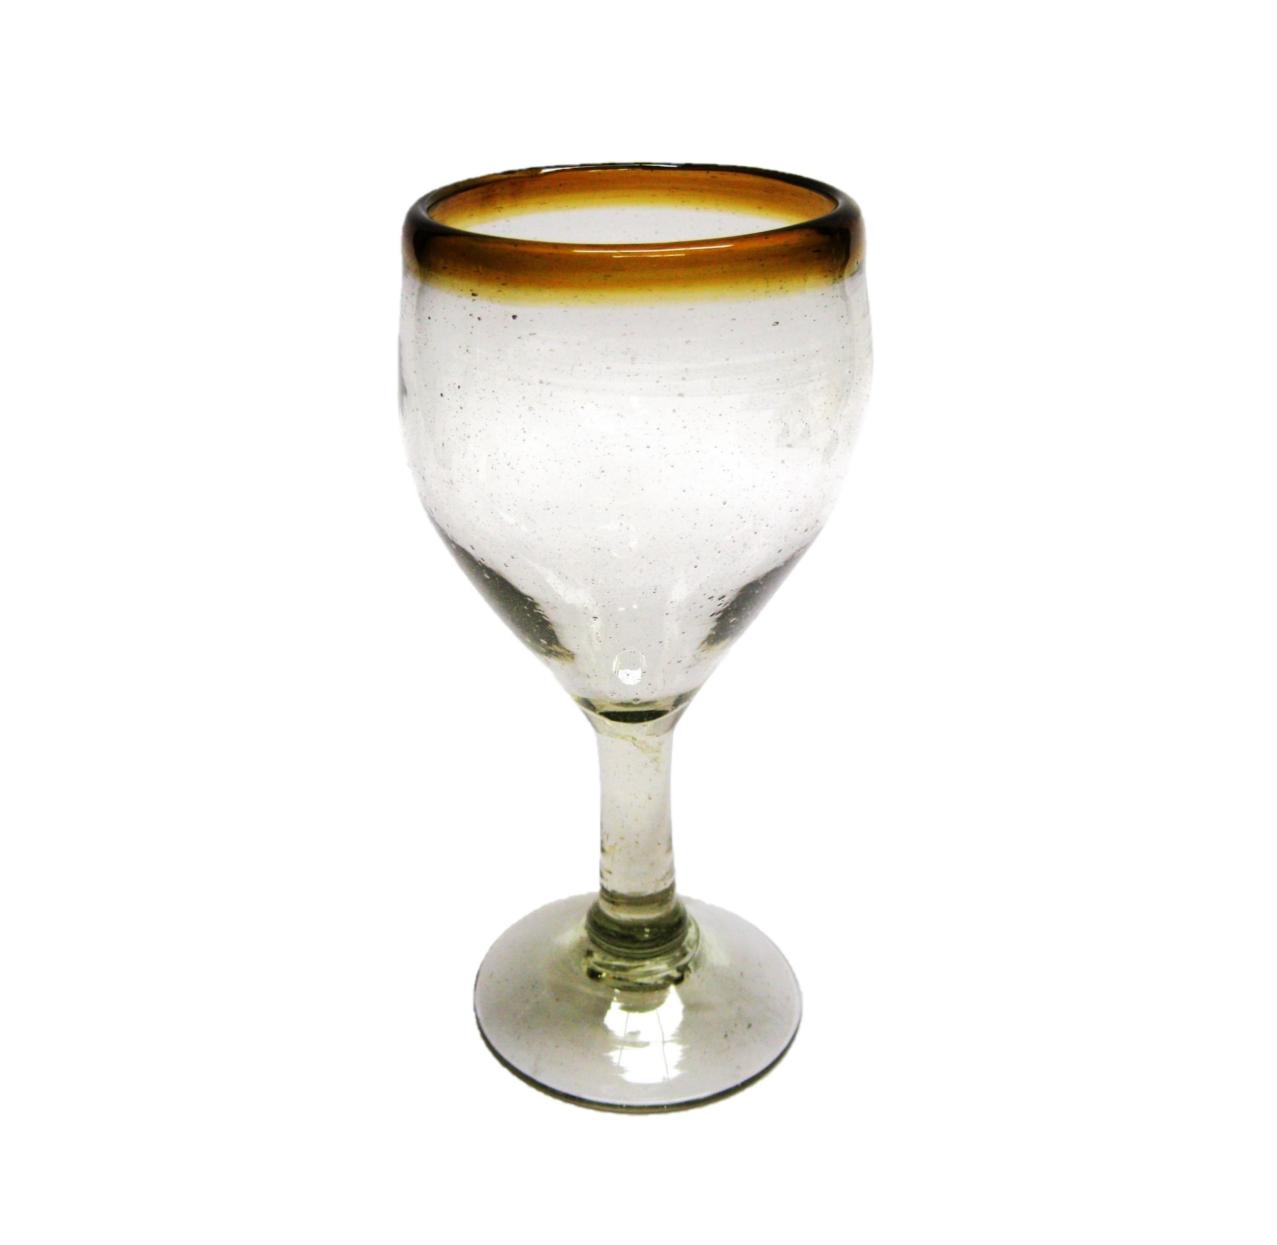 Borde Color Ambar / Juego de 6 copas para vino pequeas con borde color mbar / Capture el aroma de un fino vino tinto con stas copas decoradas con un borde color mbar.